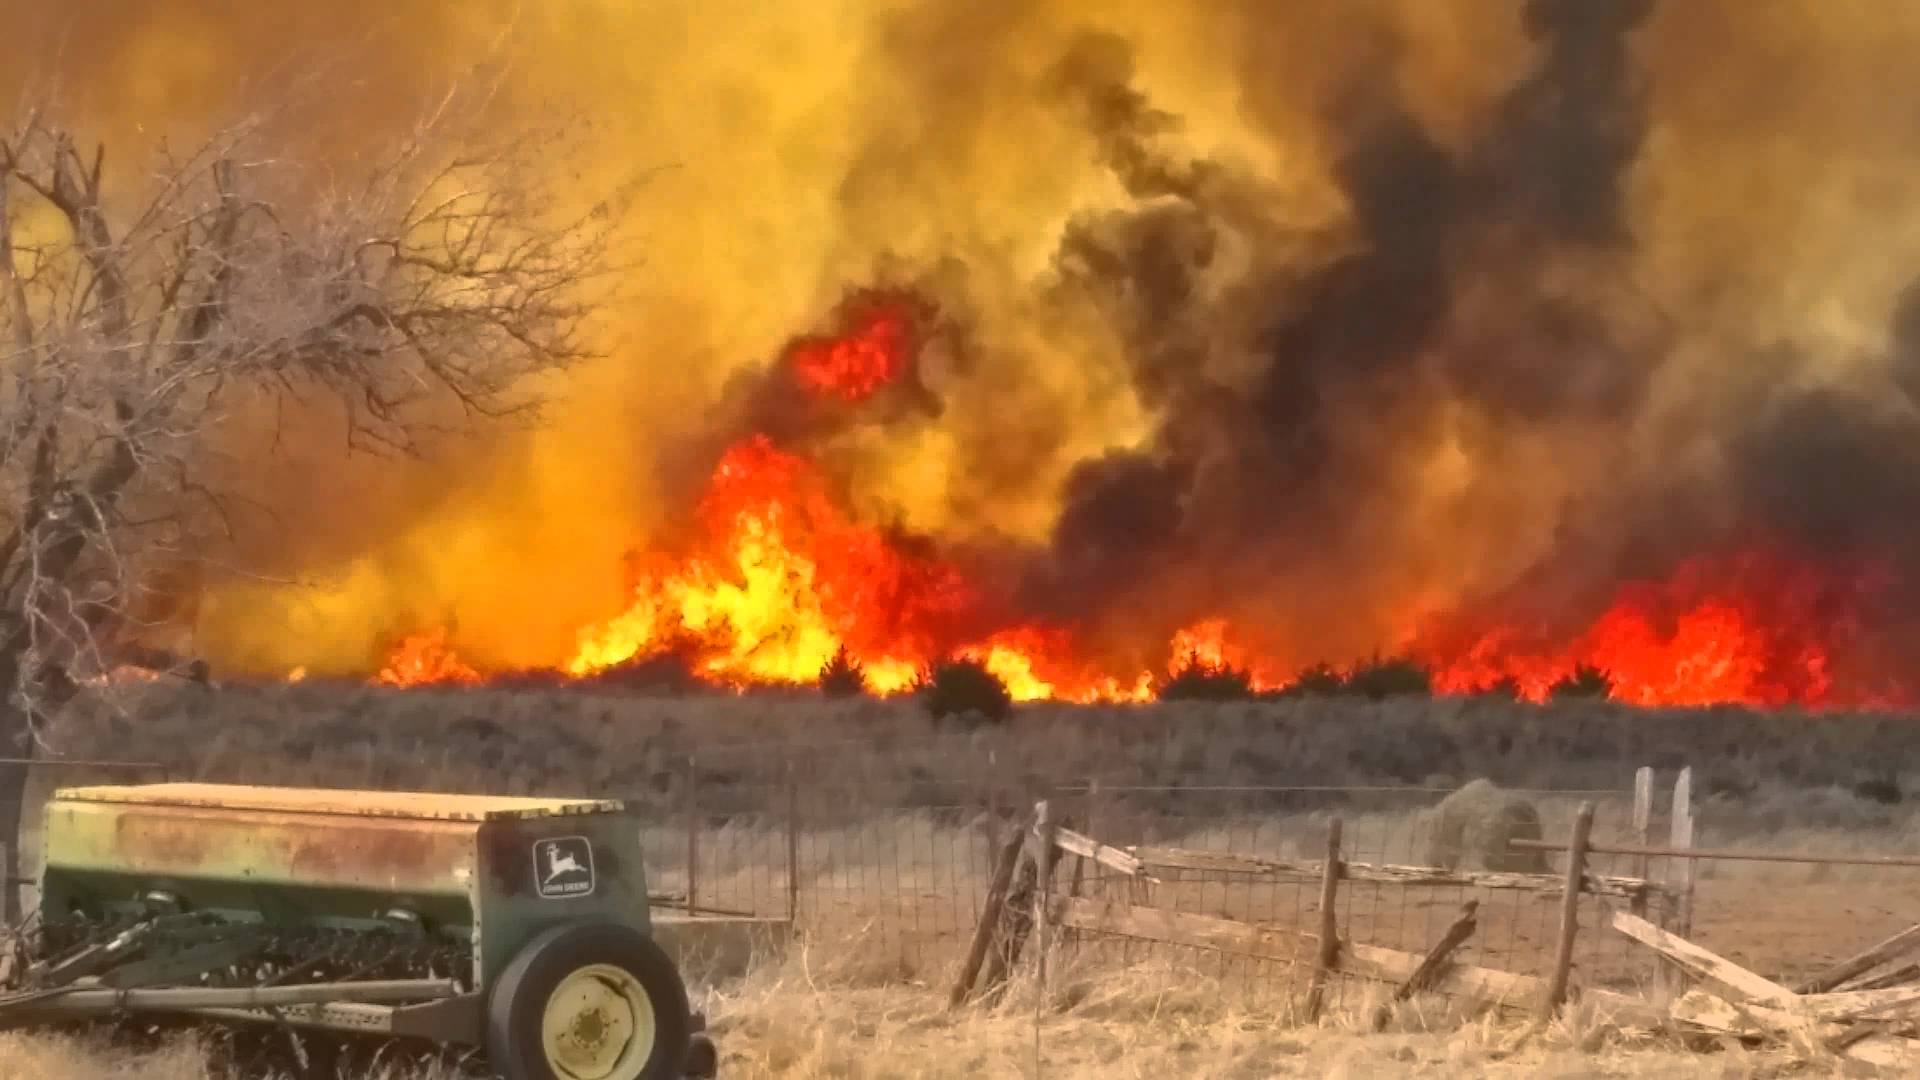 Latest: Oklahoma wildfires force evacuation of 1,400 people